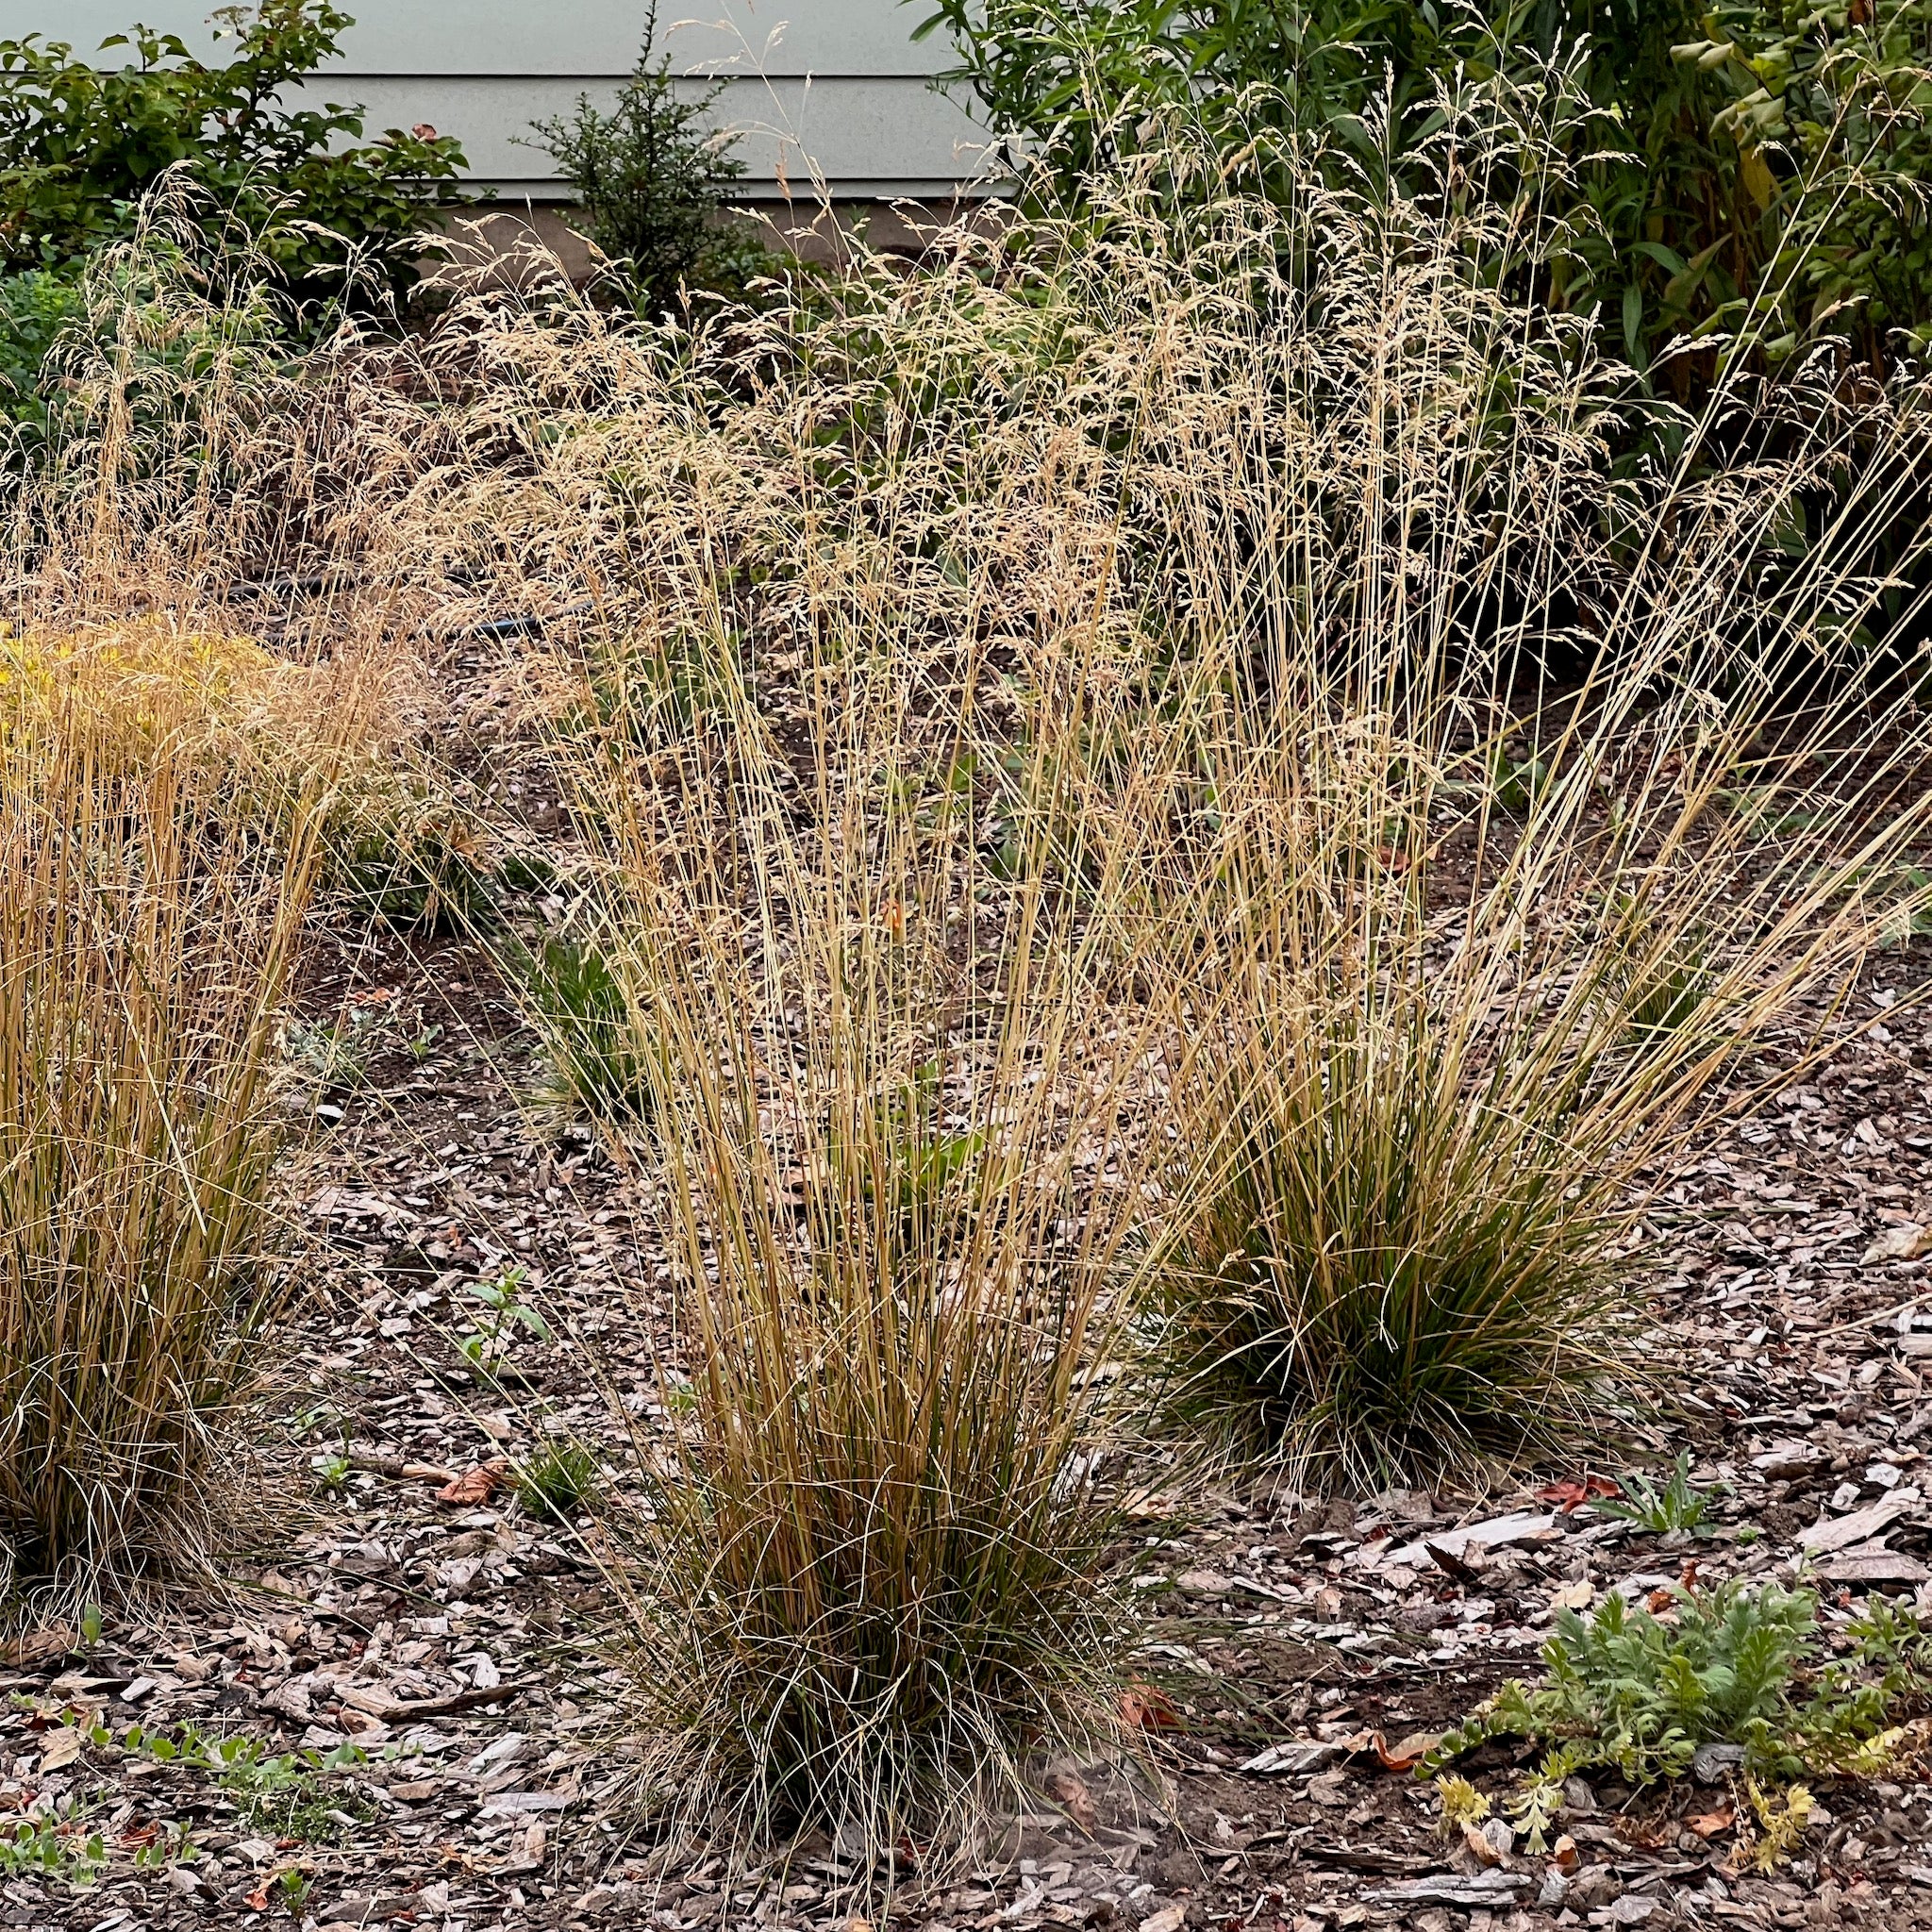 Deschampsia cespitosa - Tufted Hair Grass